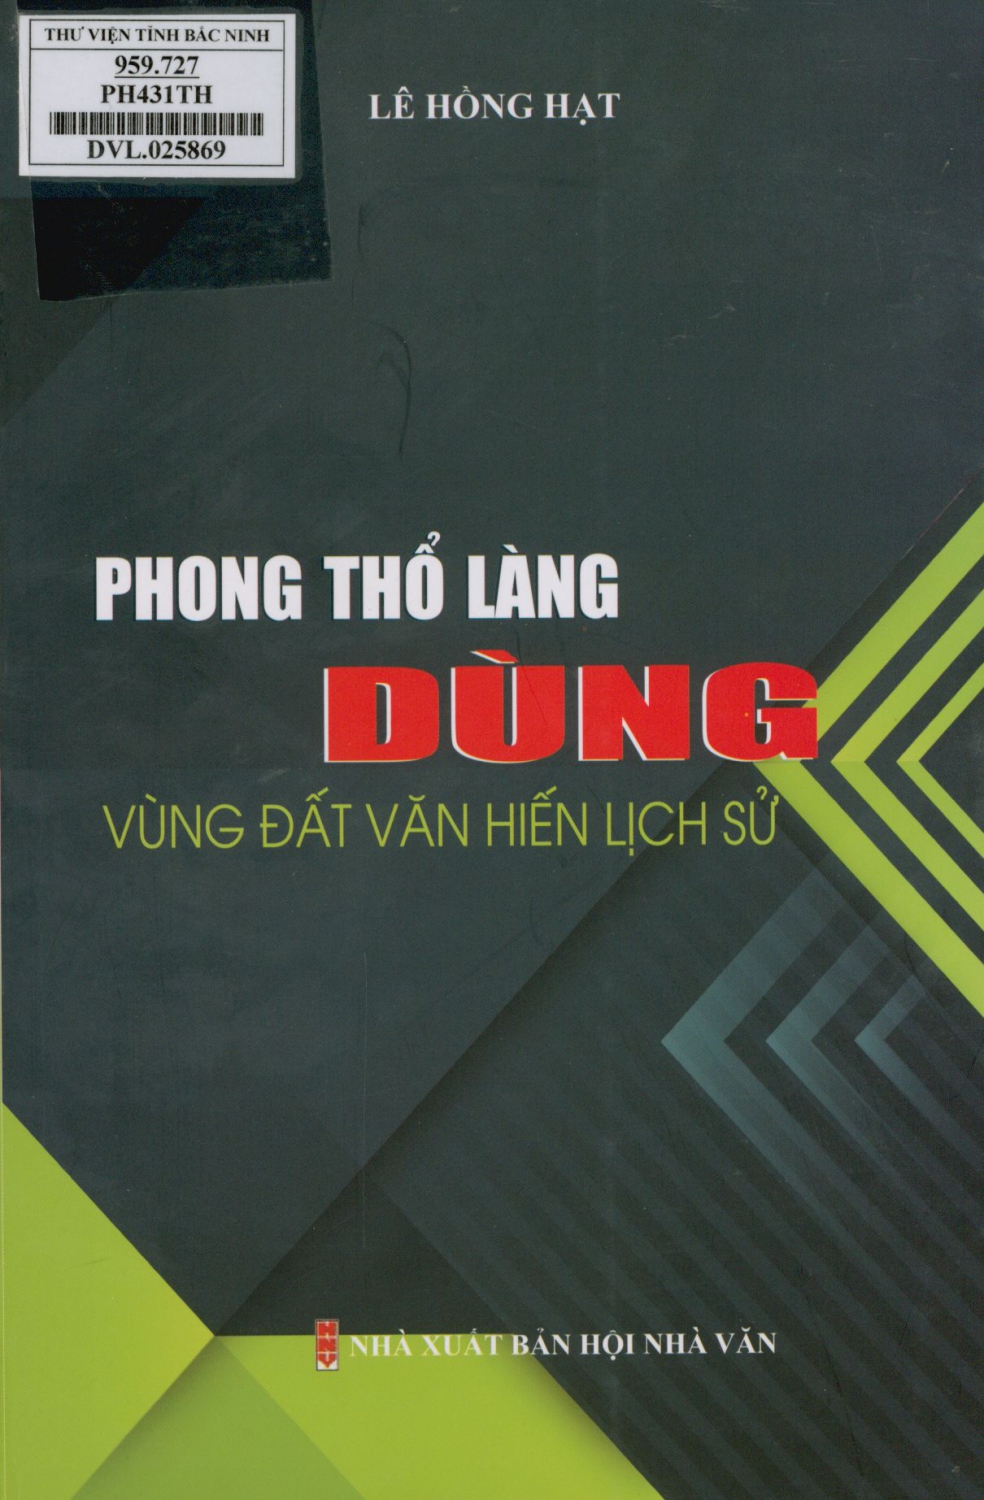 Phong thổ làng Dùng, vùng đất văn hiến lịch sử